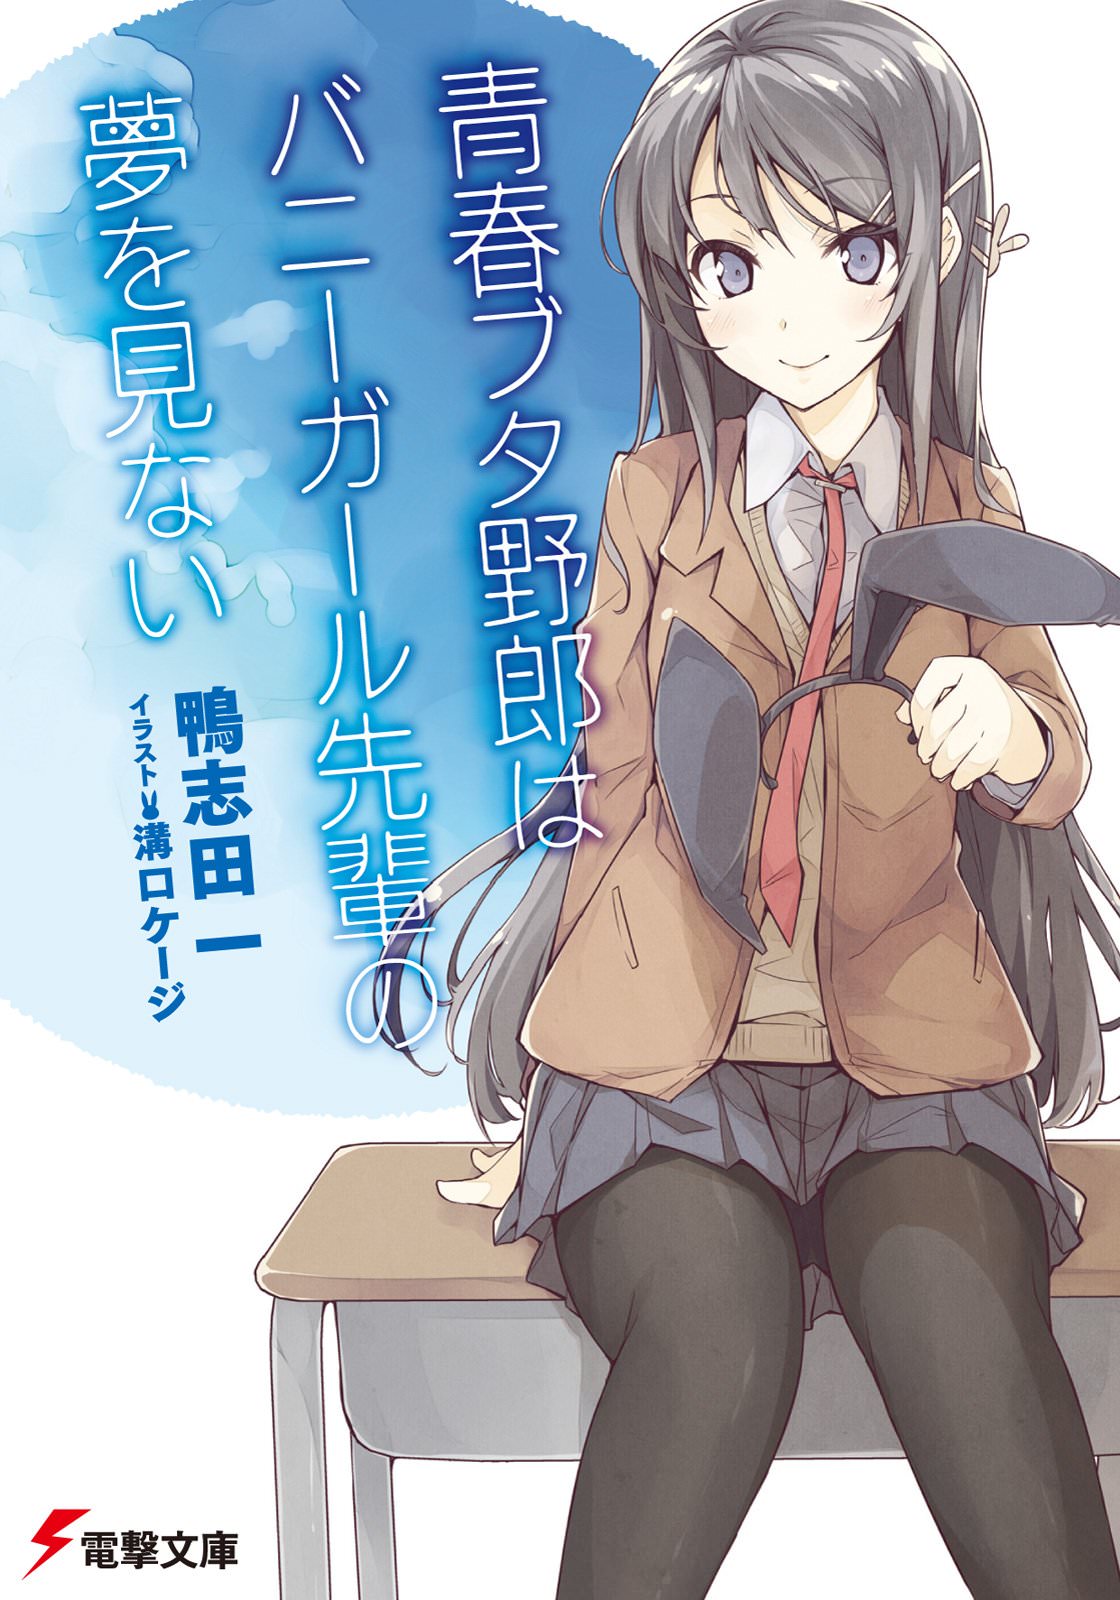 Manga, Seishun Buta Yarou wa Bunny Girl Senpai no Yume wo Minai Wiki